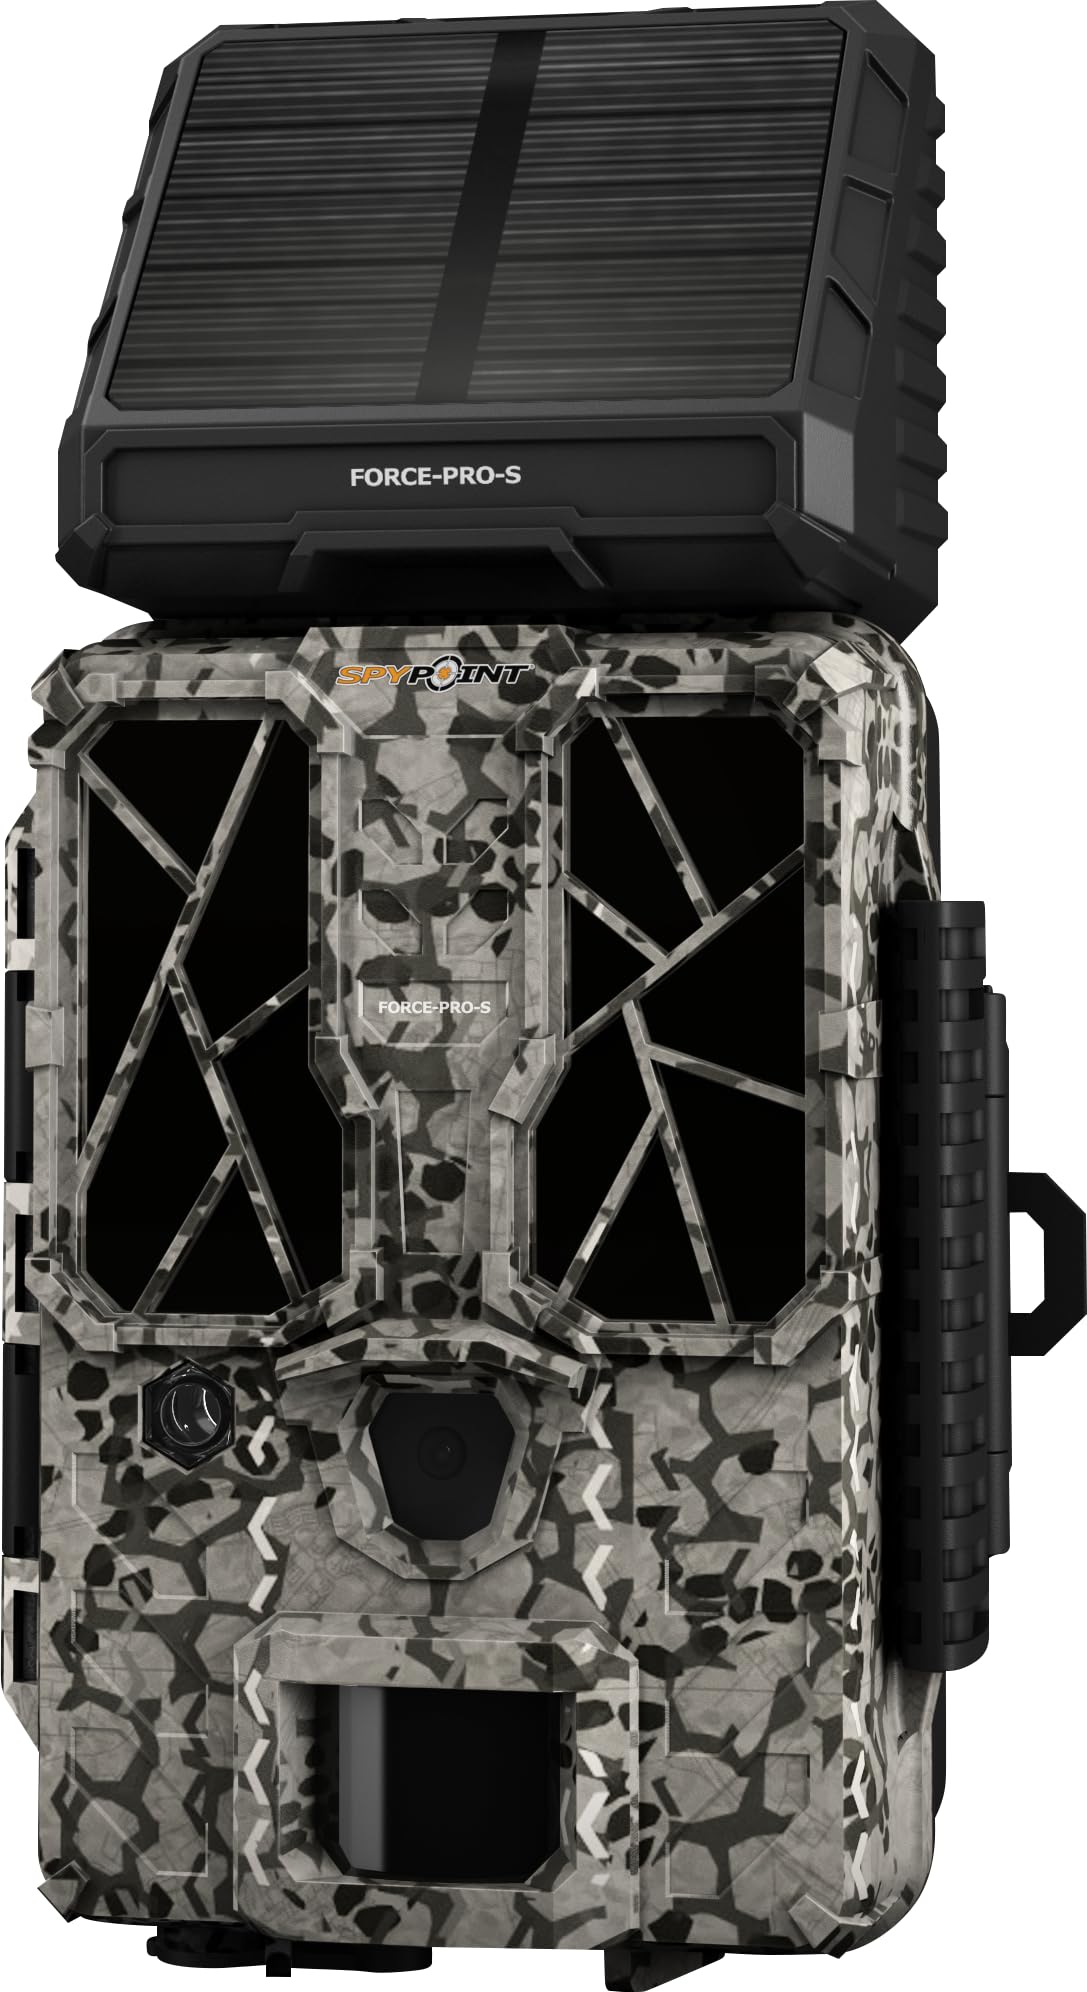 Spypoint Wildkamera Force-PRO-S 30MP FullHD 4K 0,2s Auslösezeit 34m Reichweite Nachtsicht Solarpanel 54 Super-Low-Glow-LEDs 2"-LCD-Bildschirm - Hochleistungs-Trail-Kamera für Jagd, Überwachung